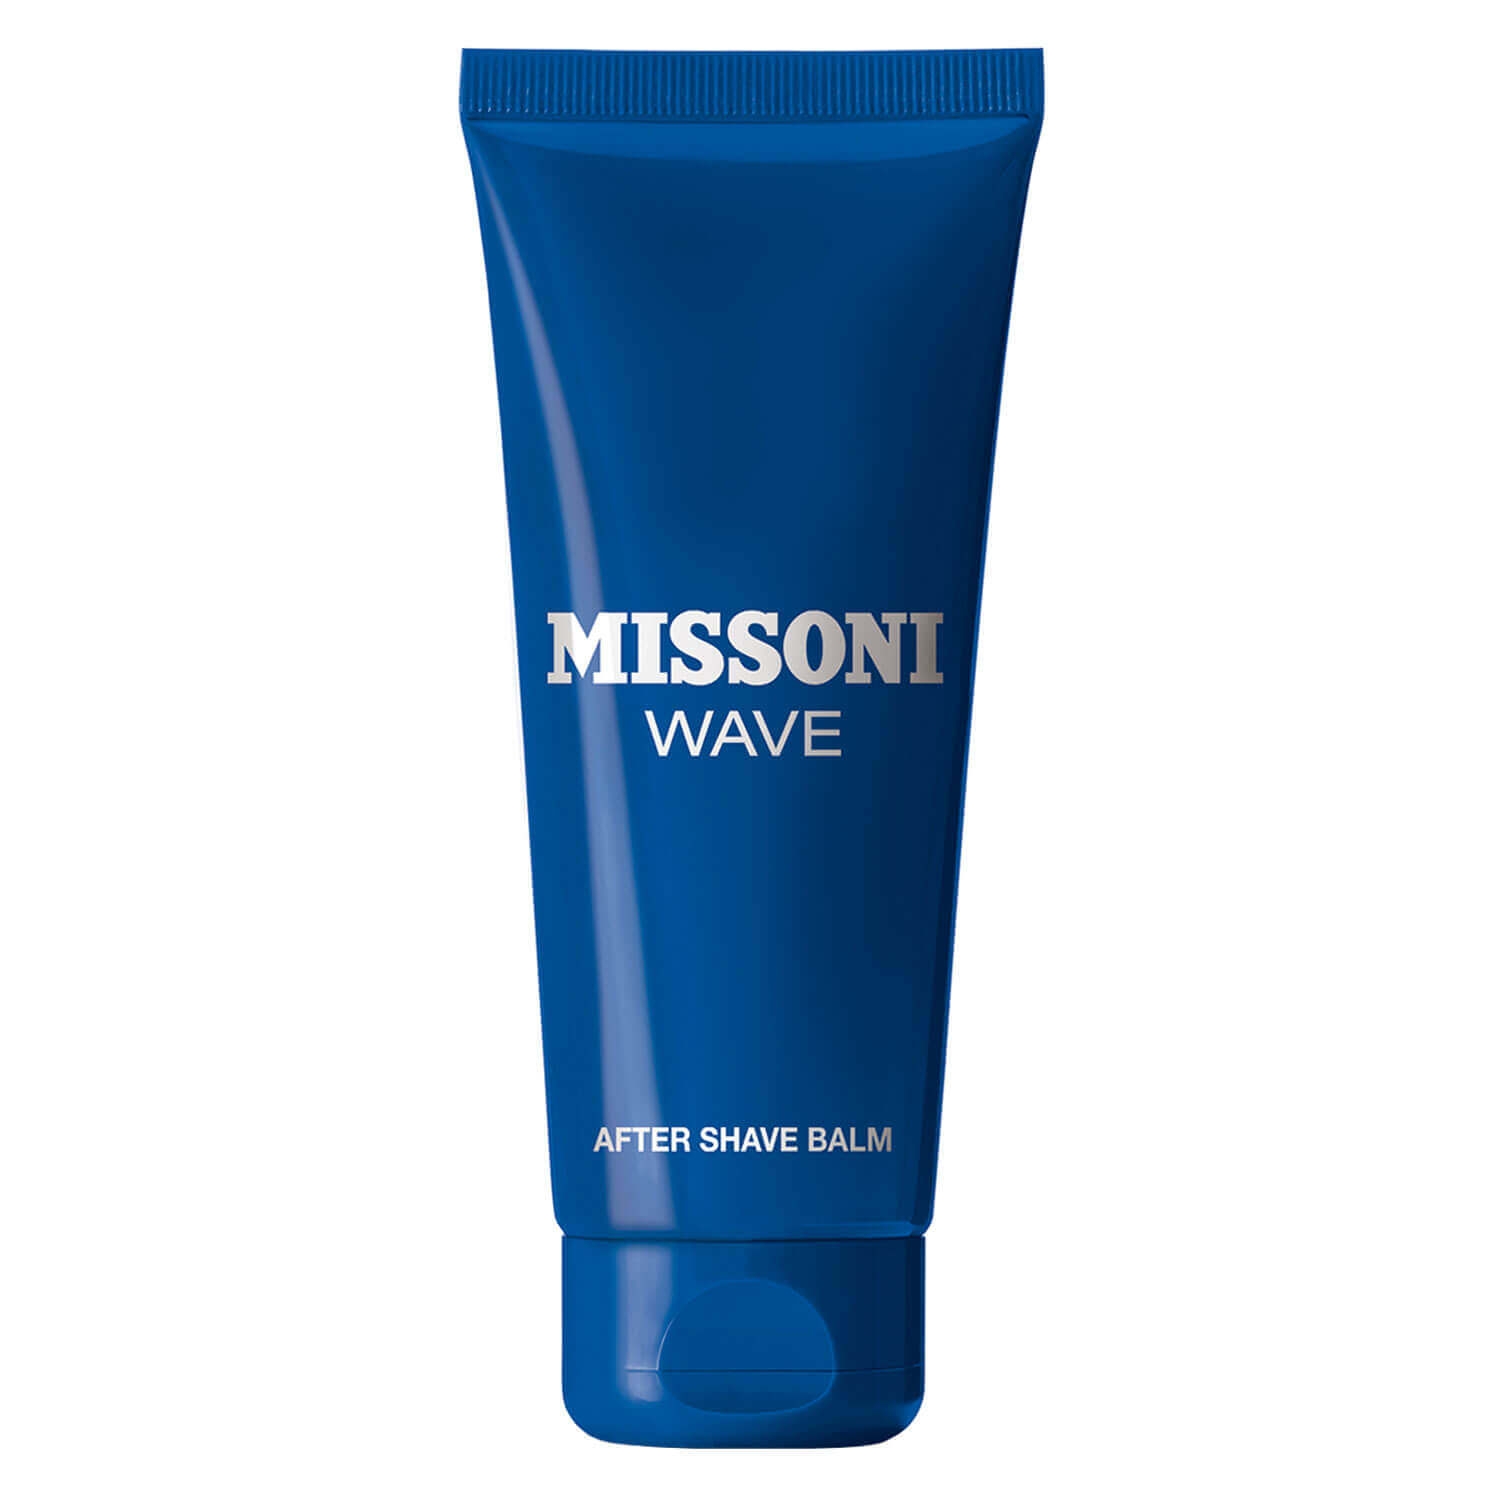 Produktbild von Missoni Wave - After Shave Balm